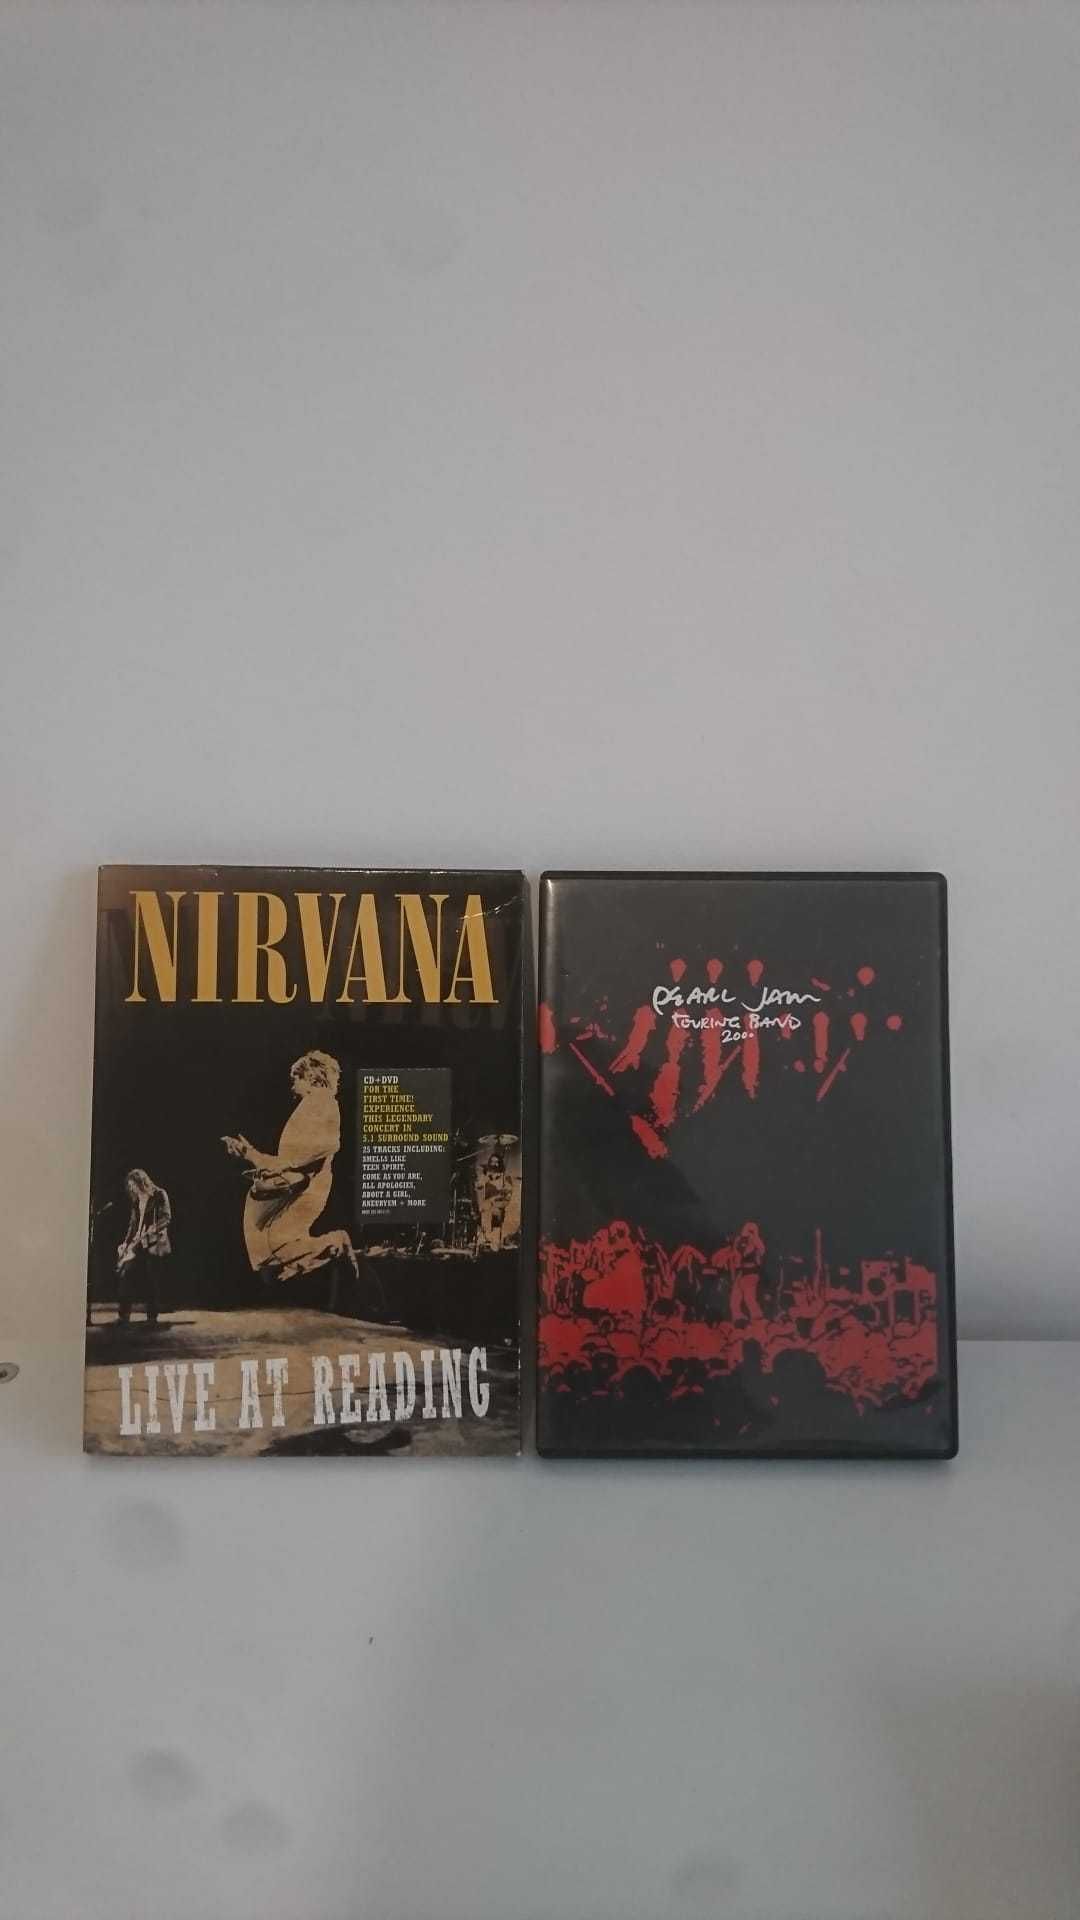 Pague 1, leve 2: edição especial DVD+CD Nirvana + DVD PearlJam